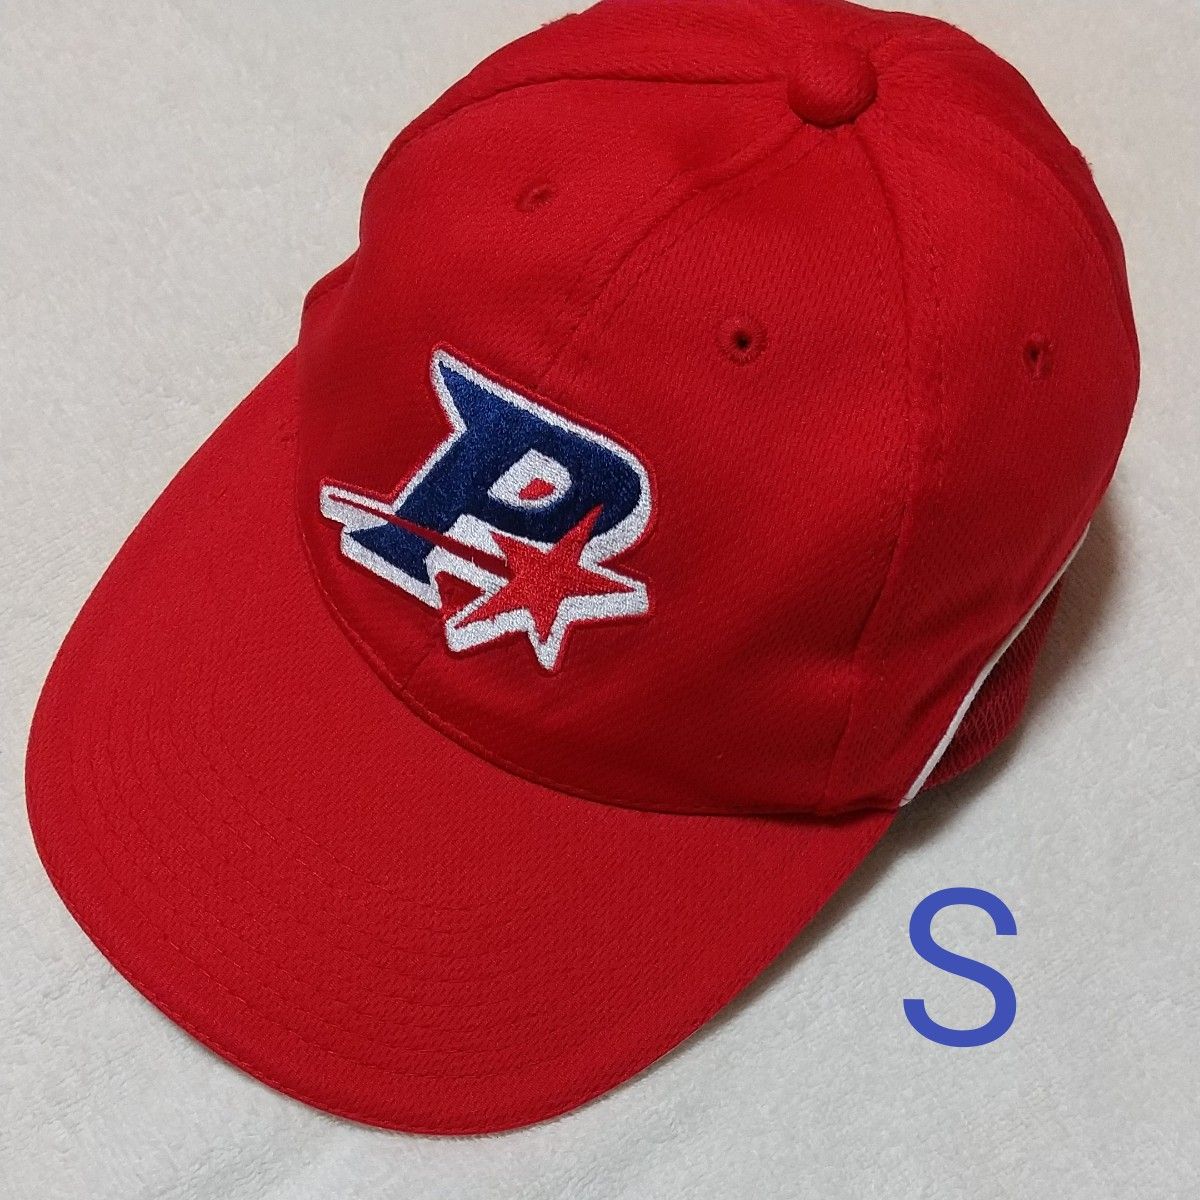 記名なし S  ポルテ 帽子  野球帽 キャップ ベースボール 野球 mizuno ミズノ  洗い替え用に購入、一回着用位 きれい